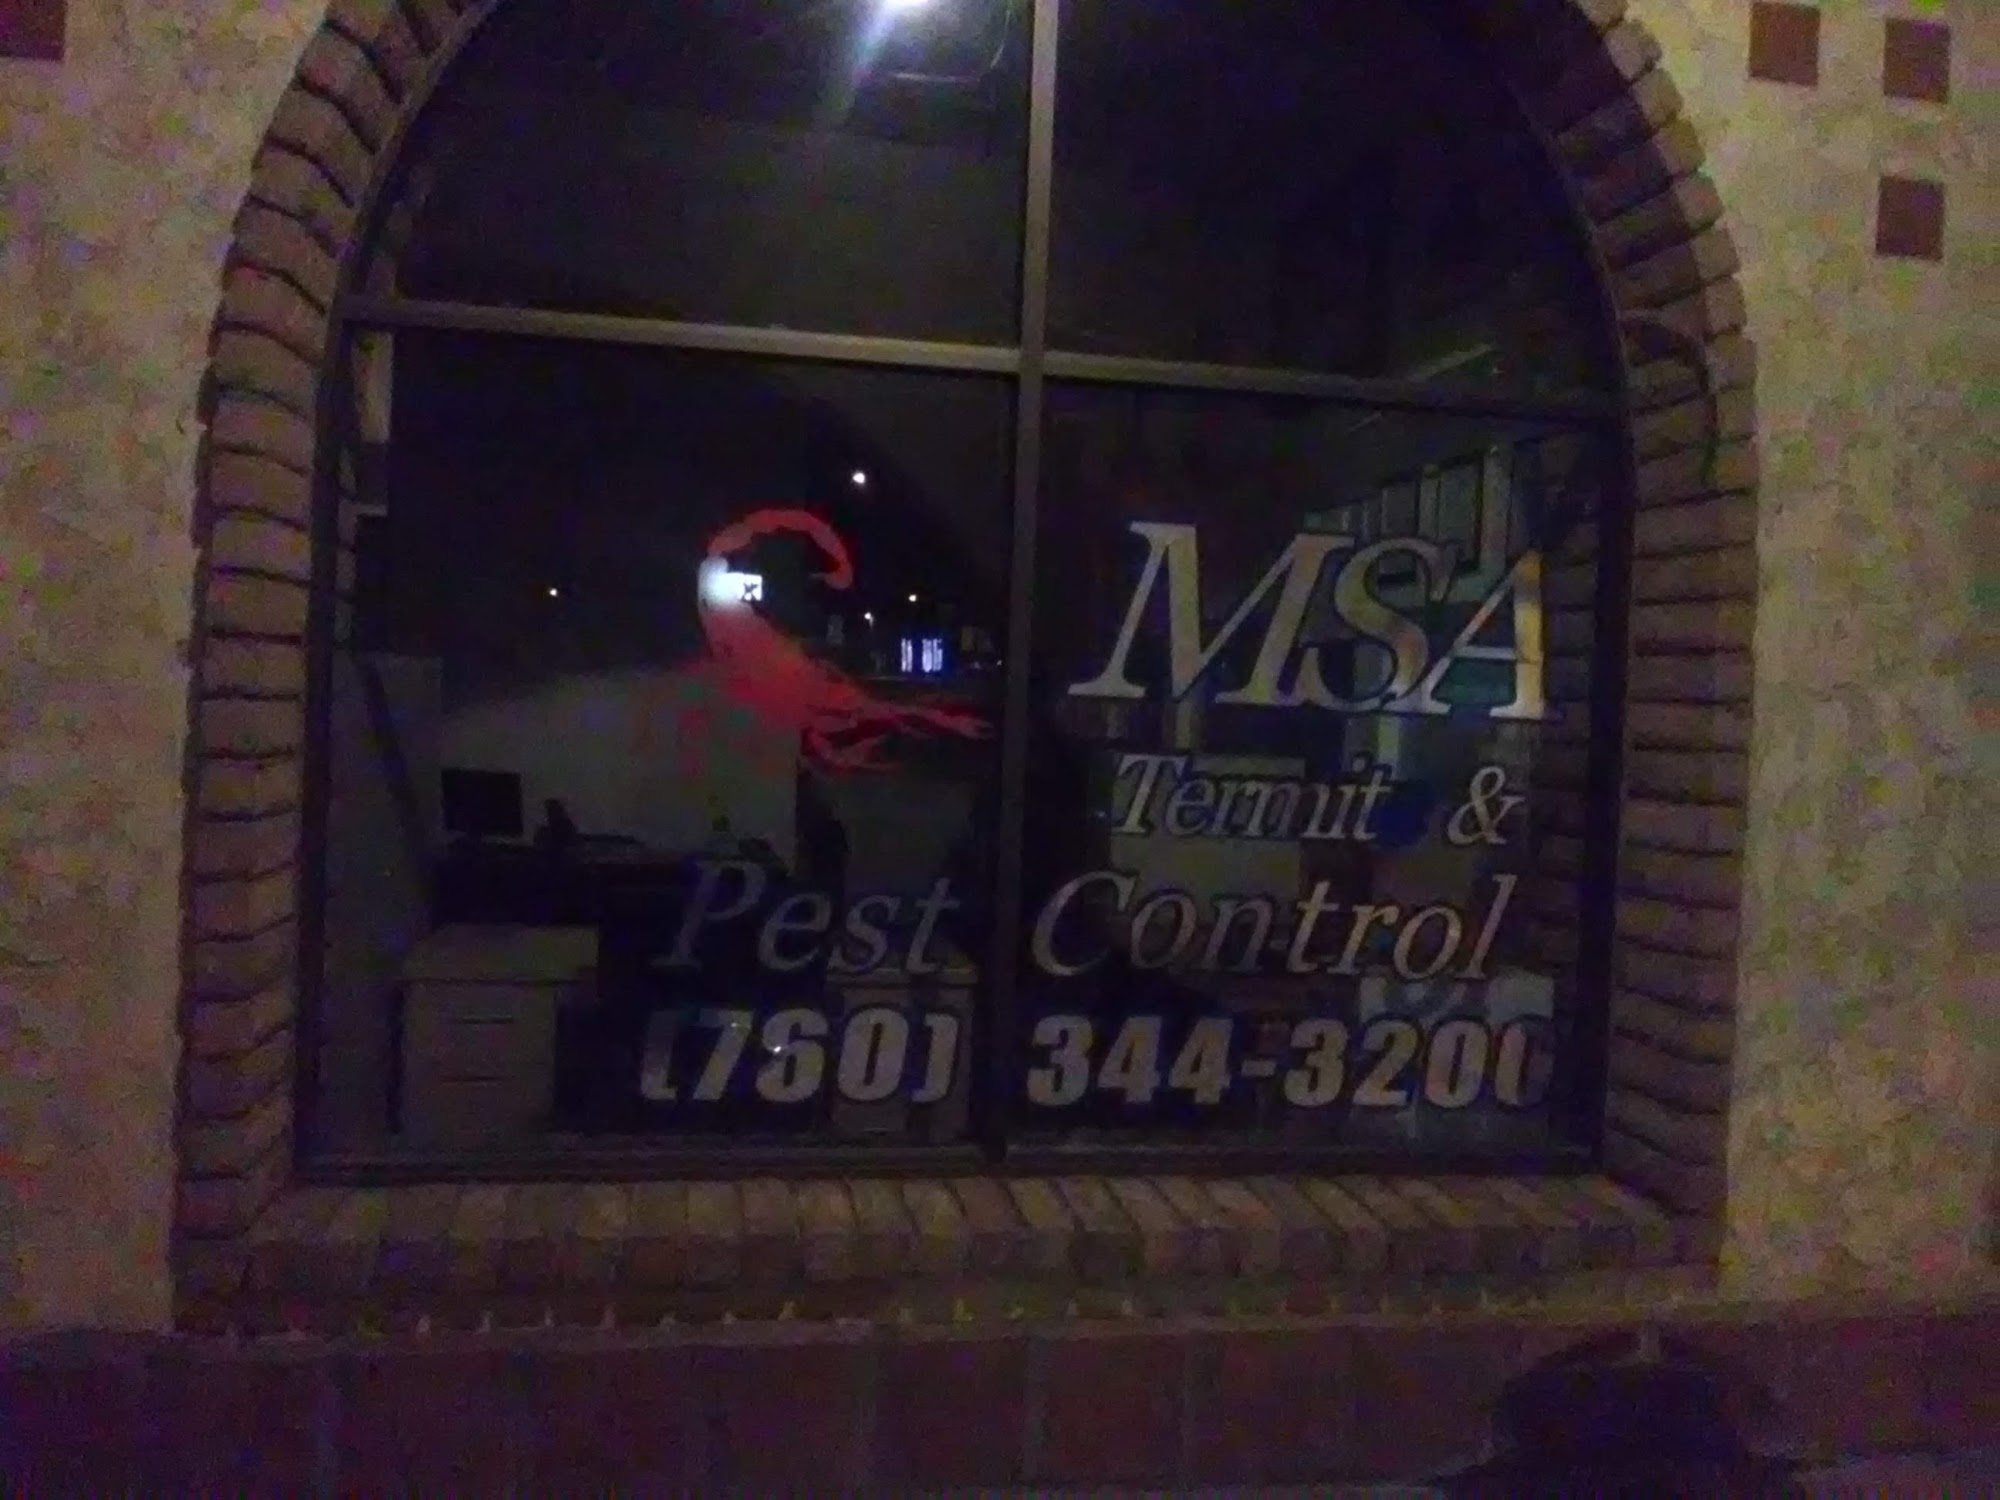 MSA Termite & Pest Control 659 Main St, Brawley California 92227